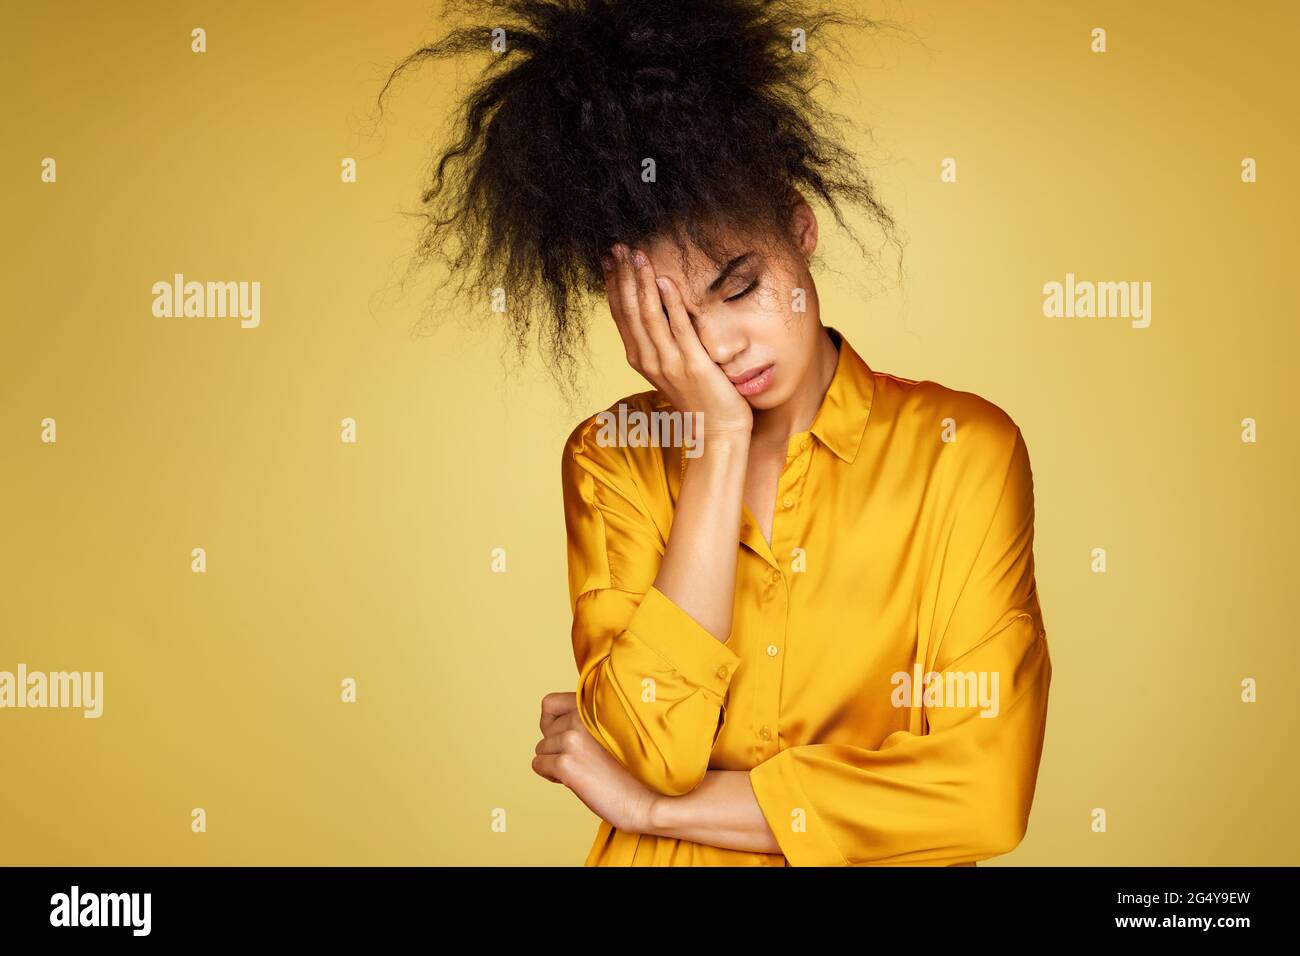 Müde Mädchen bedeckt Gesicht mit Handfläche, fühlt sich überfordert und Müdigkeit. Foto von afroamerikanischen Mädchen auf gelbem Hintergrund Stockfoto